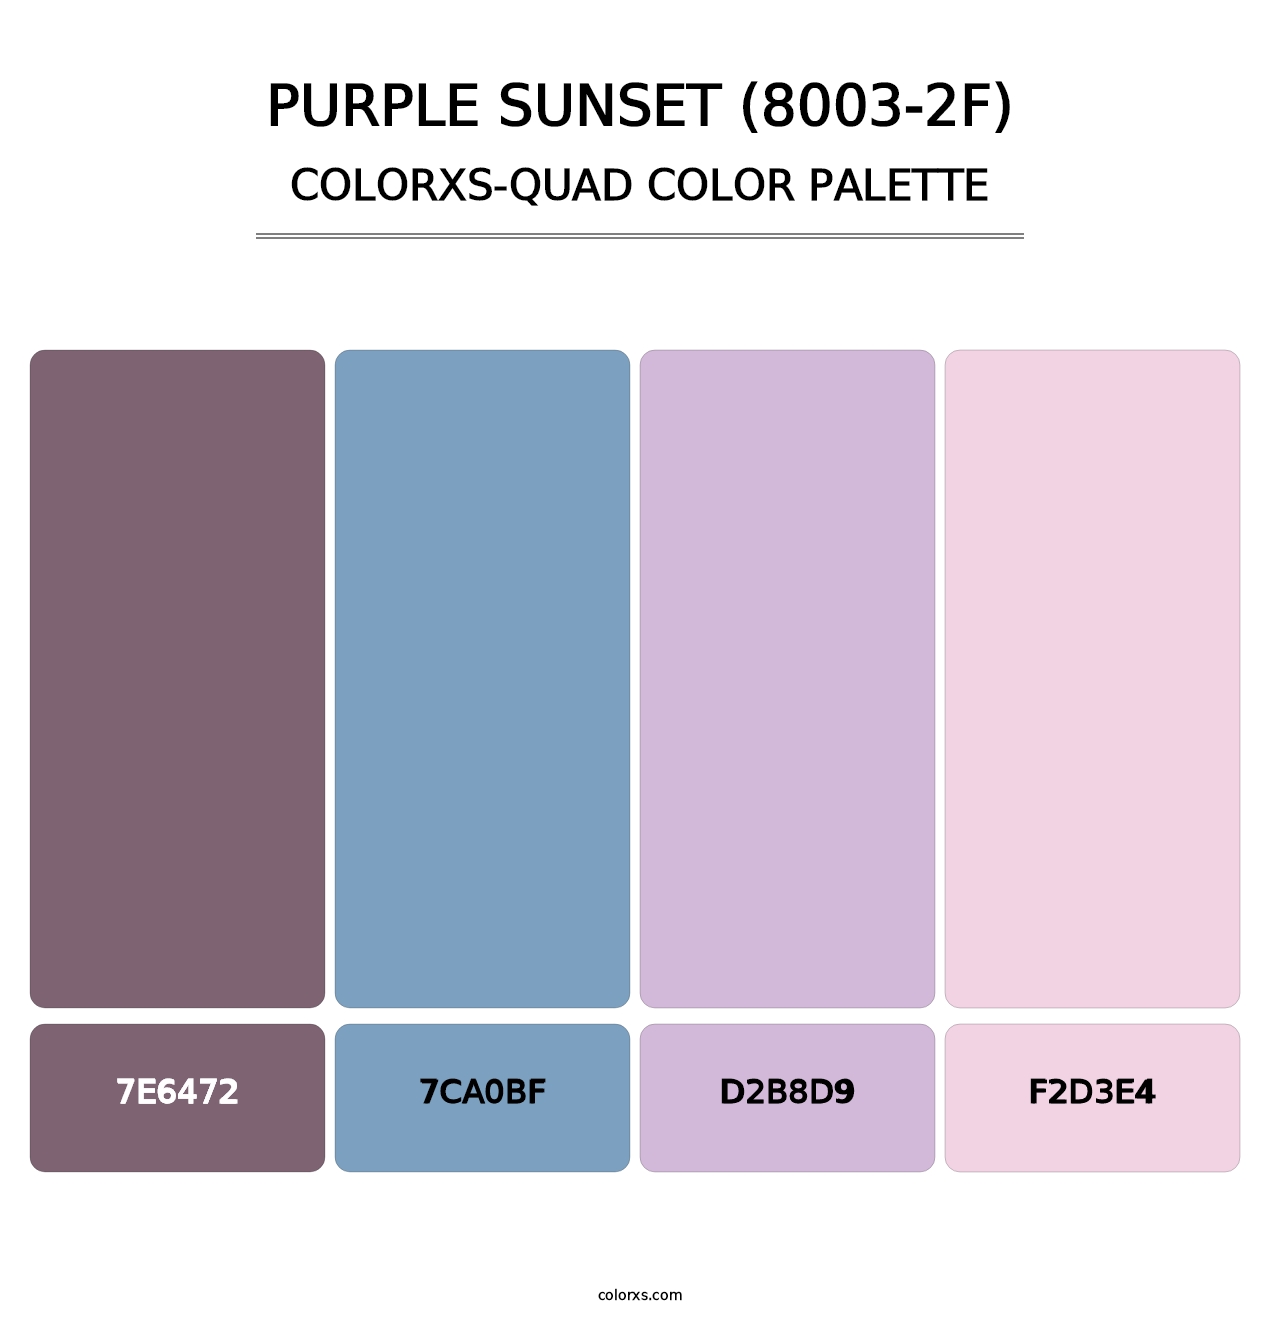 Purple Sunset (8003-2F) - Colorxs Quad Palette